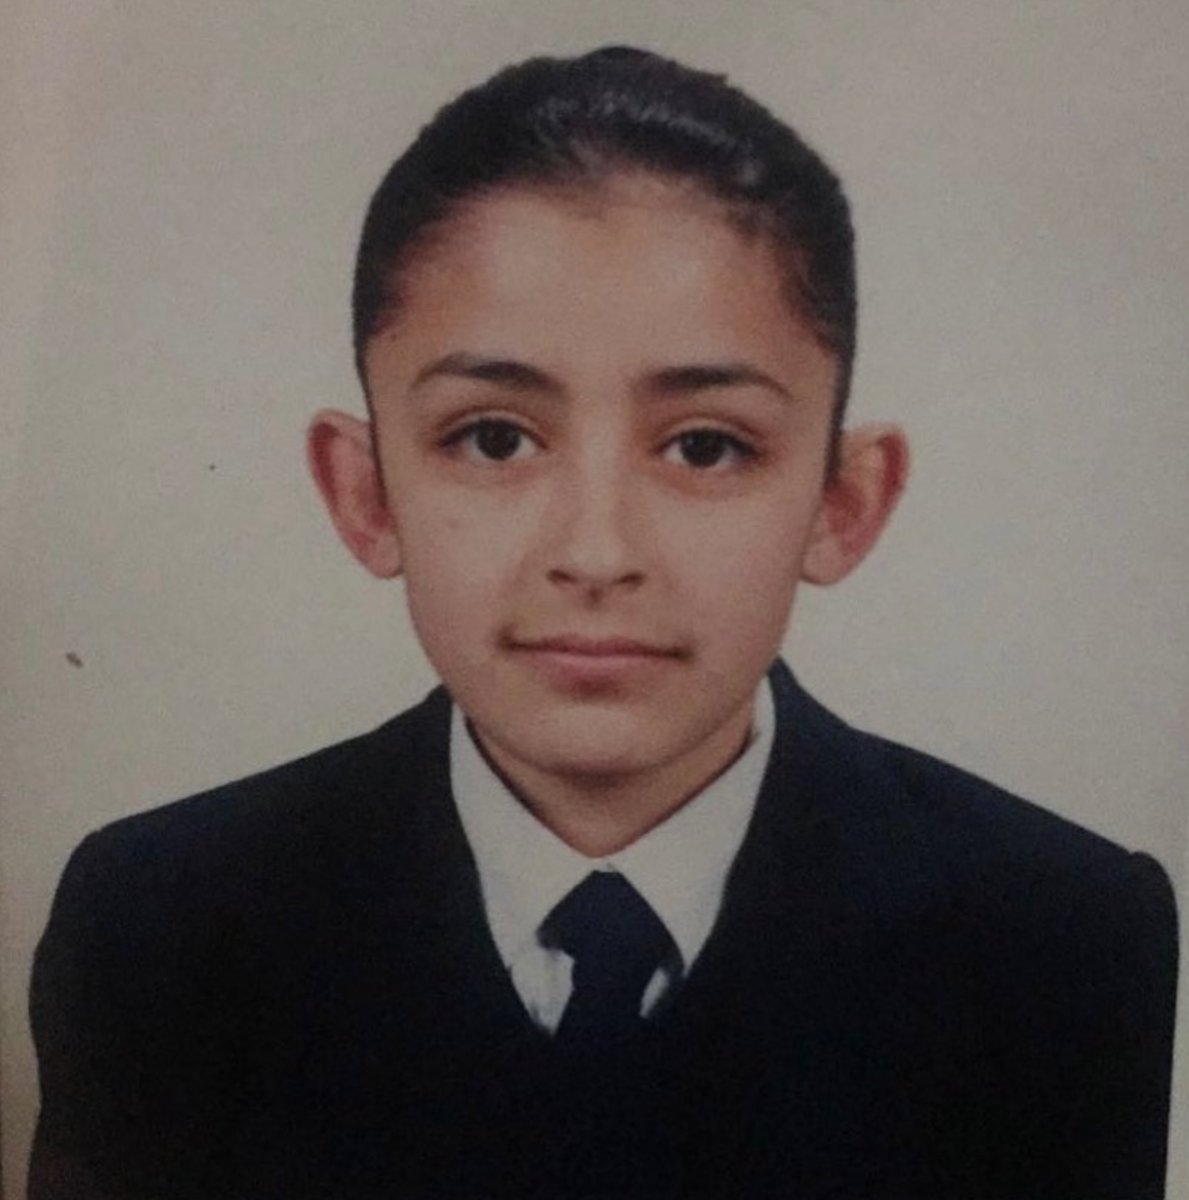  Melek Mosso nun çocukluk fotoğrafı #1